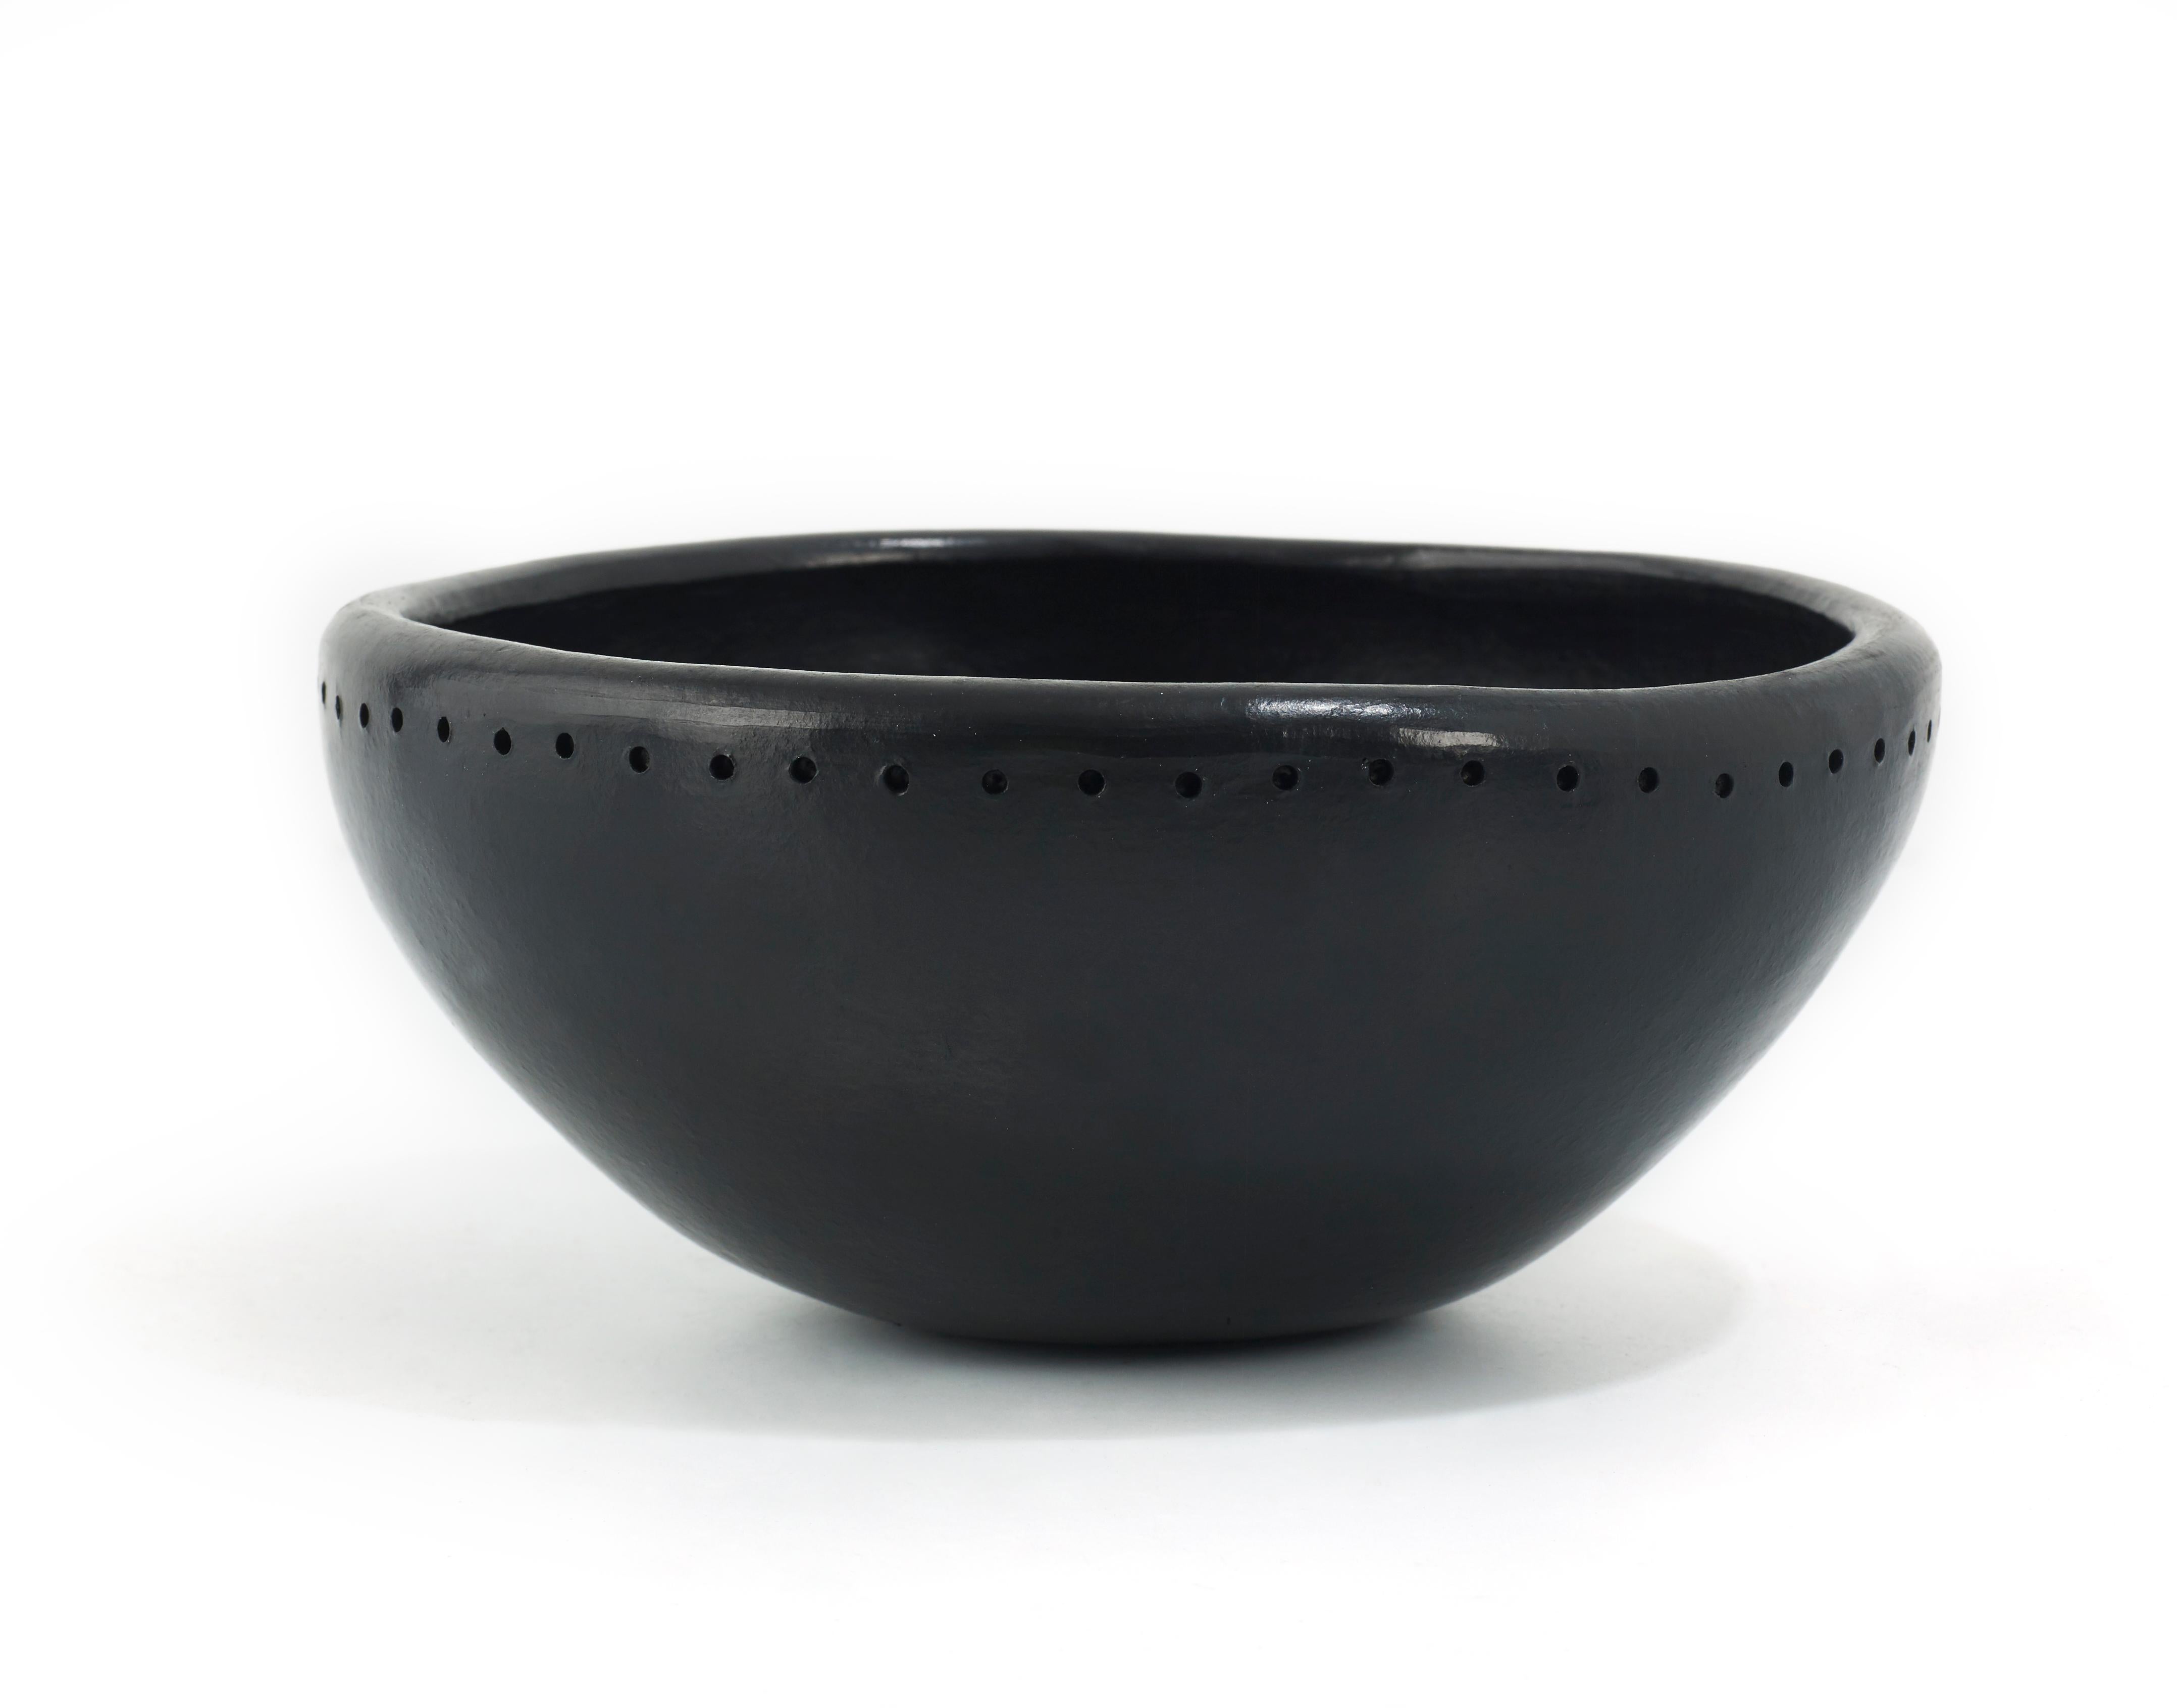 X kleine schale Barro dining by Sebastian Herkner
MATERIAL: hitzebeständige schwarze Keramik. 
Technik: glasiert. Im Ofen gegart und mit Halbedelsteinen poliert. 
Abmessungen: Durchmesser 16,5 cm x Höhe 8 cm 
Erhältlich in den Größen: Groß, Mittel